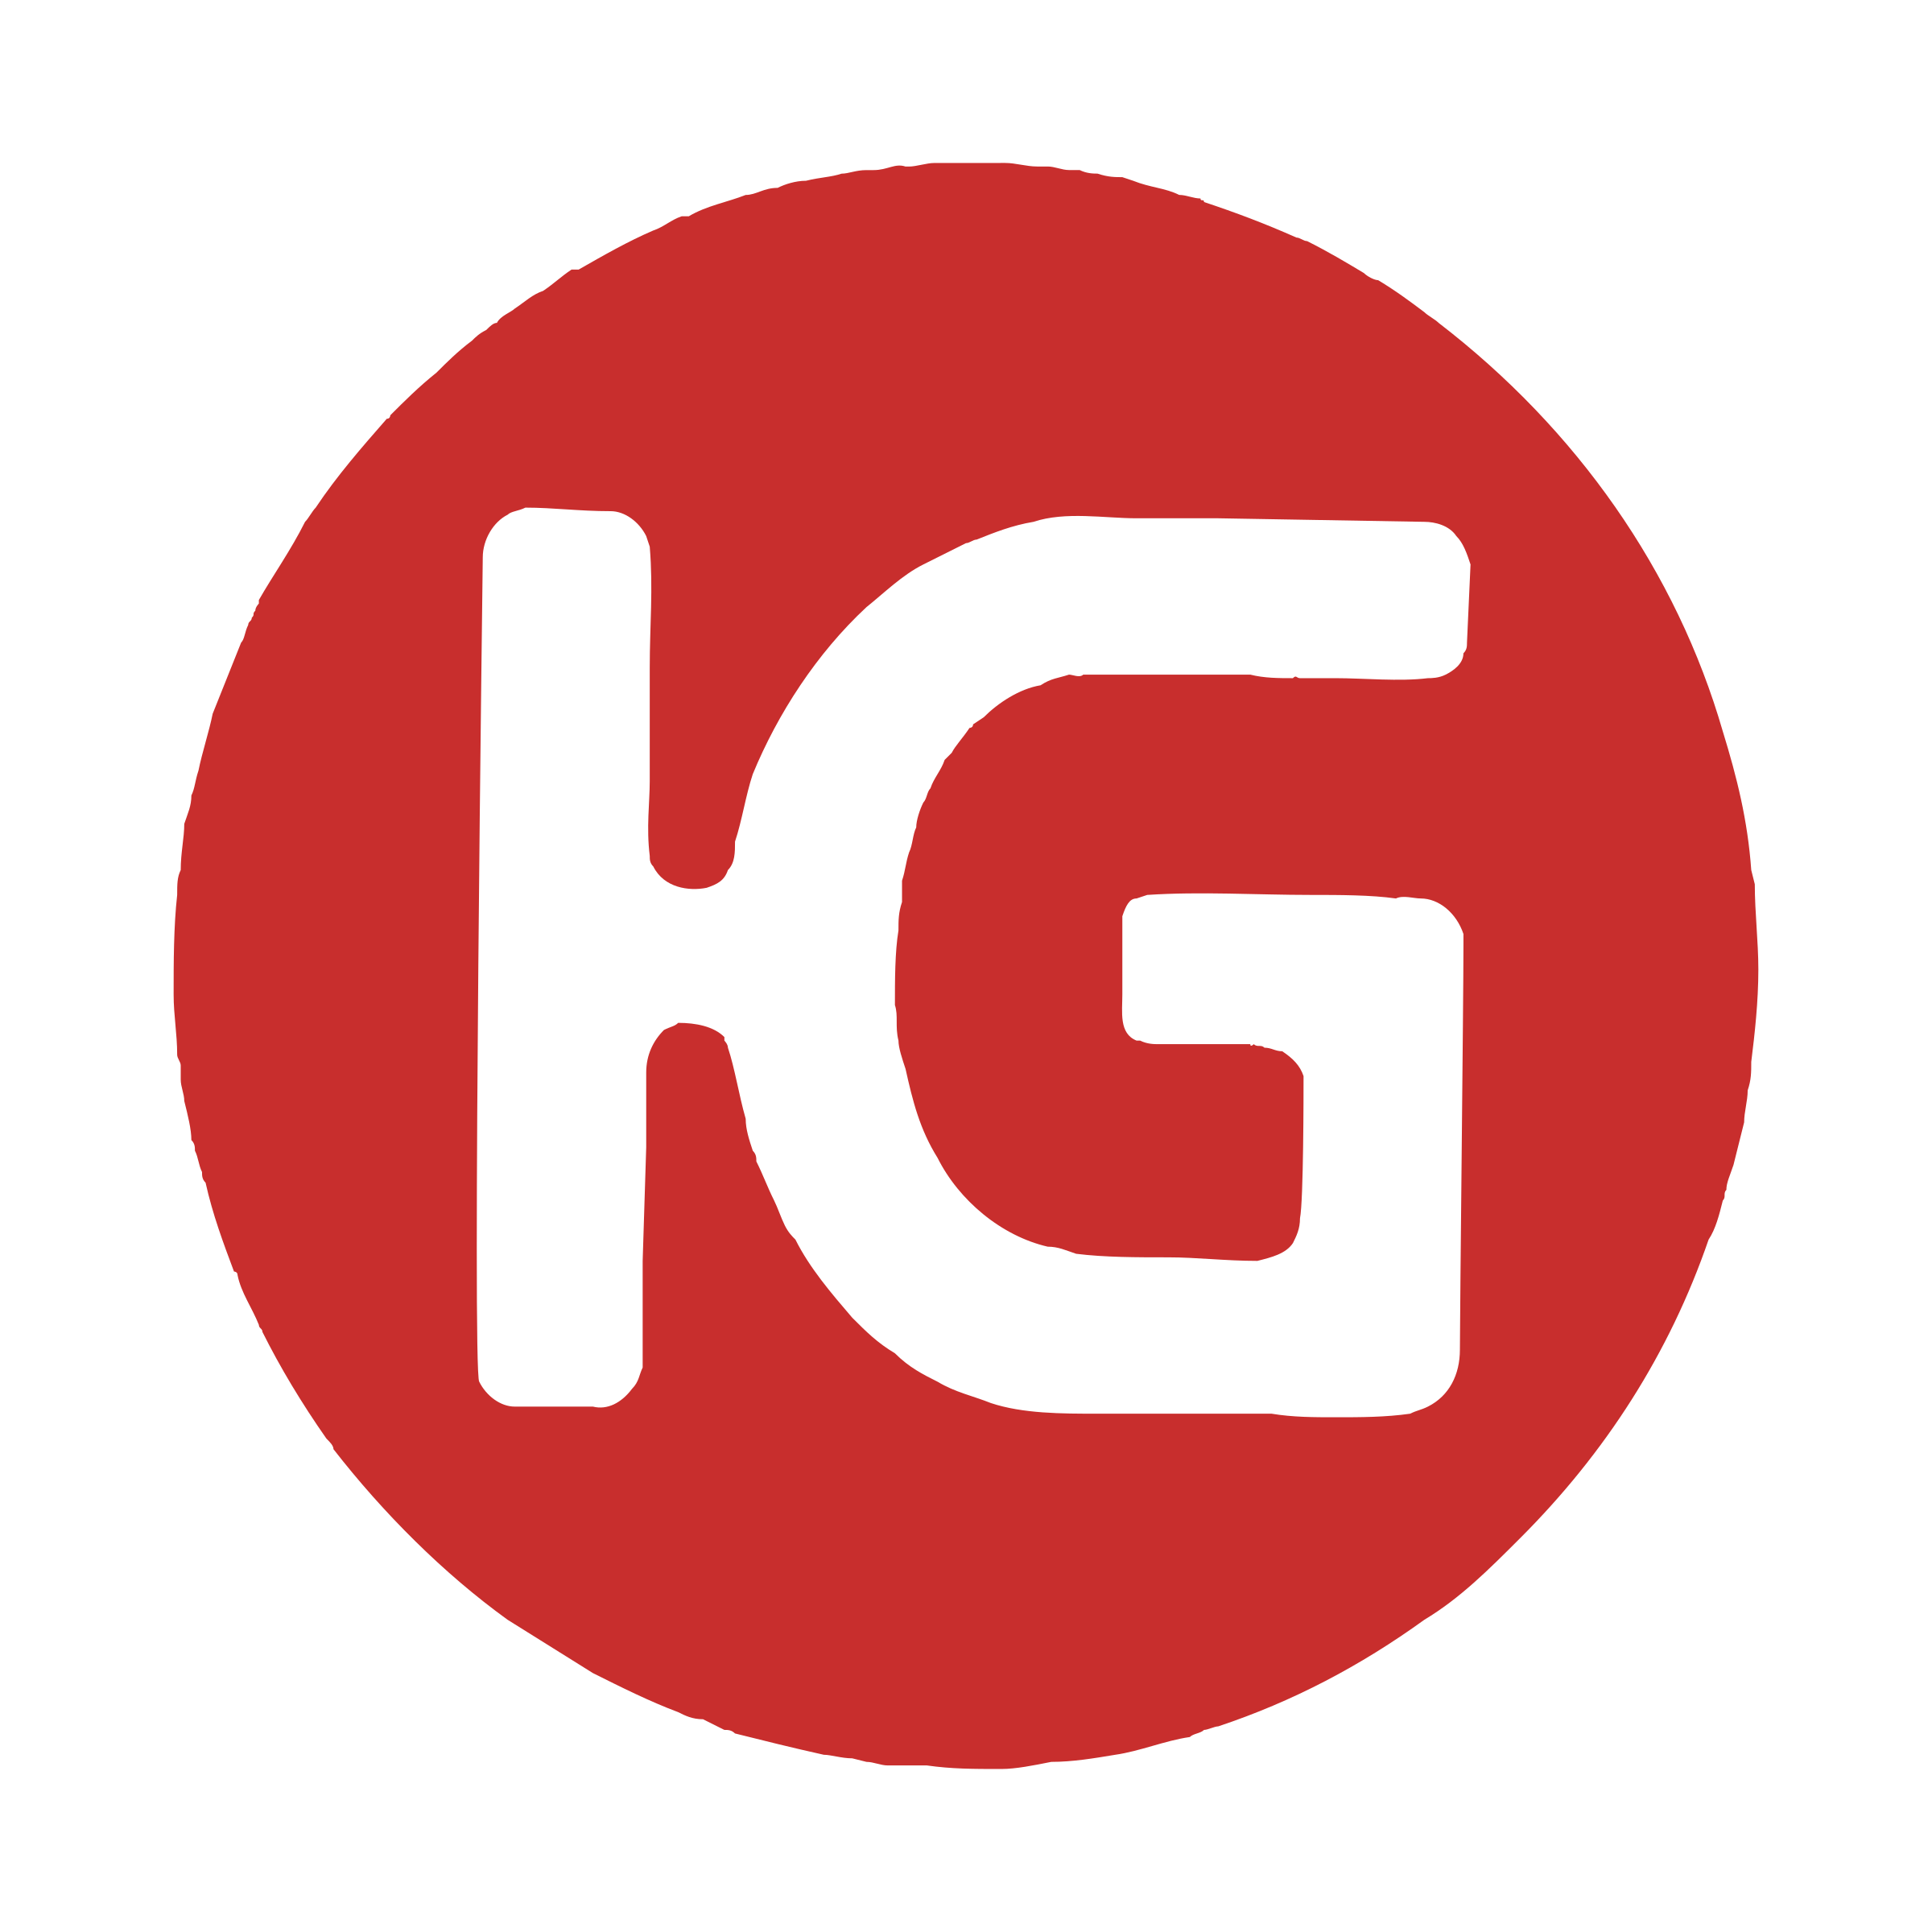 Instagram IG Logo Free PNG Image